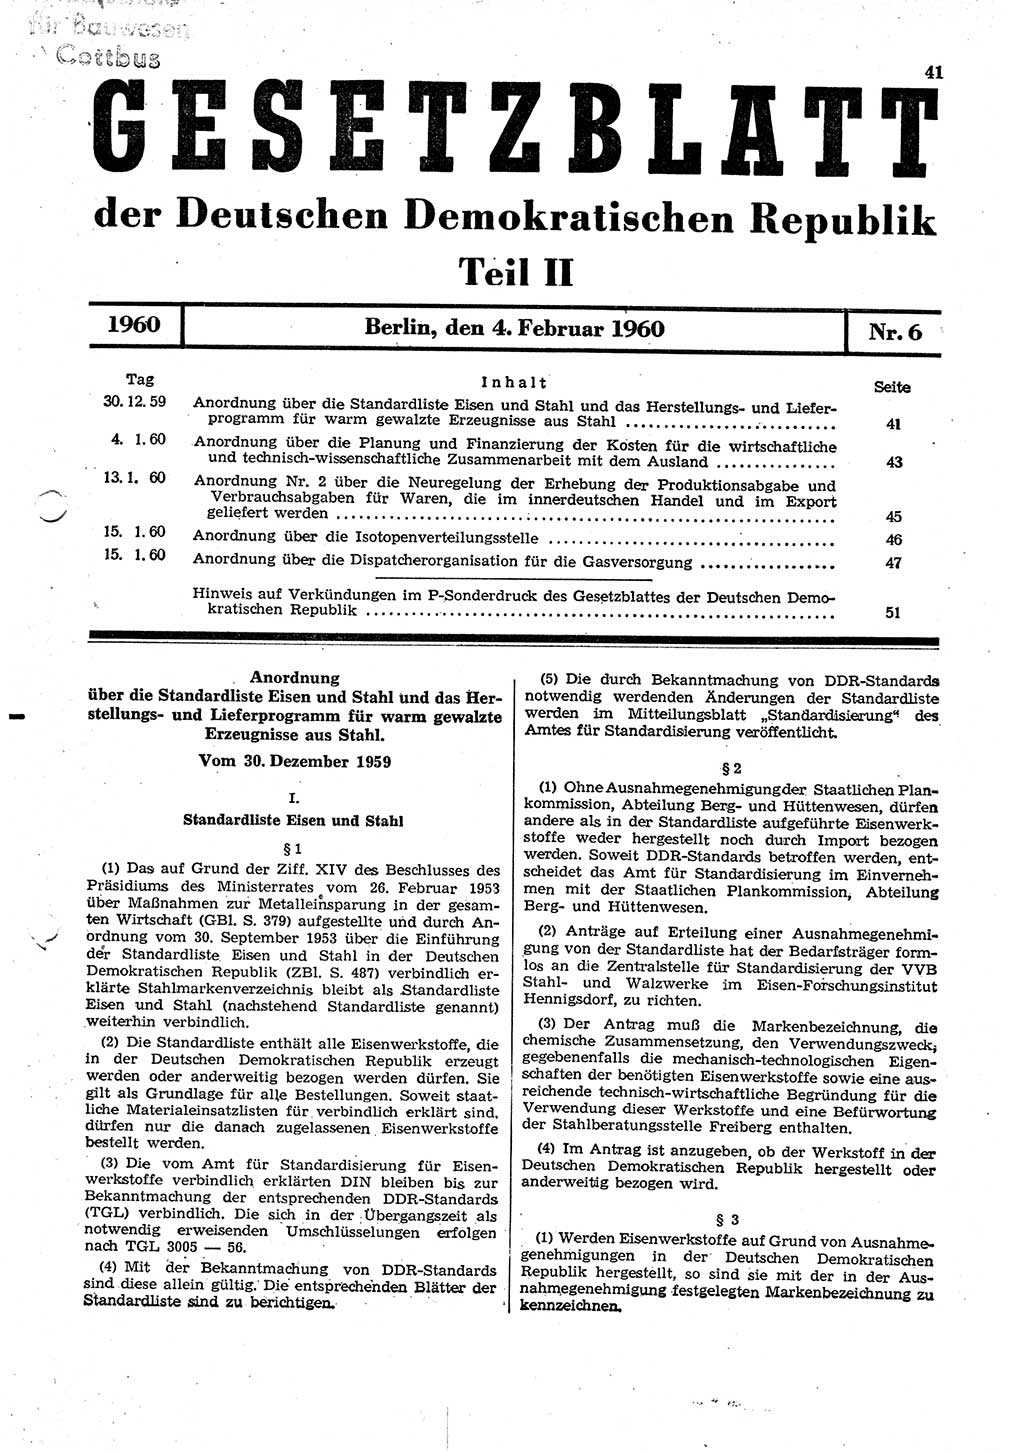 Gesetzblatt (GBl.) der Deutschen Demokratischen Republik (DDR) Teil ⅠⅠ 1960, Seite 41 (GBl. DDR ⅠⅠ 1960, S. 41)